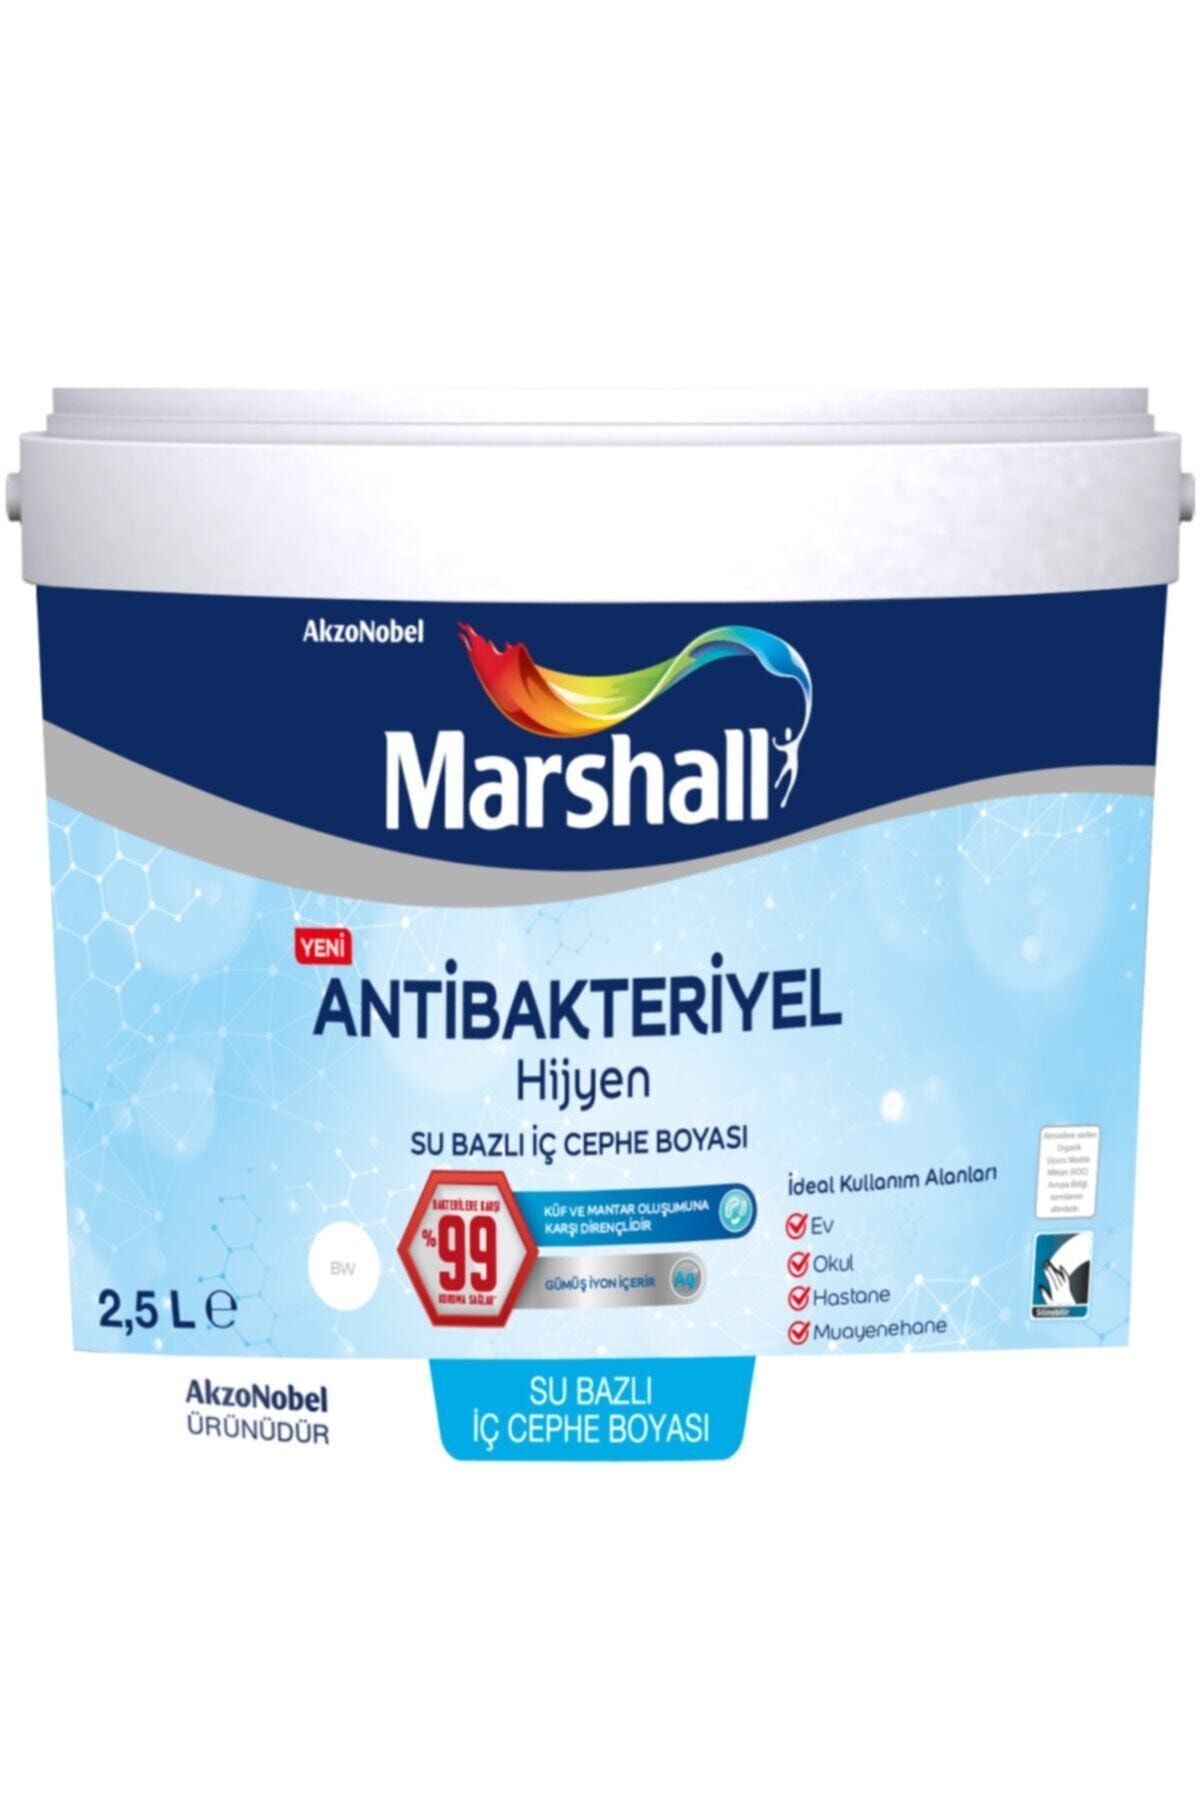 Marshall Antibakteriyel Hijyen Iç Cephe Duvar Boyası 2,5 Lt Salep